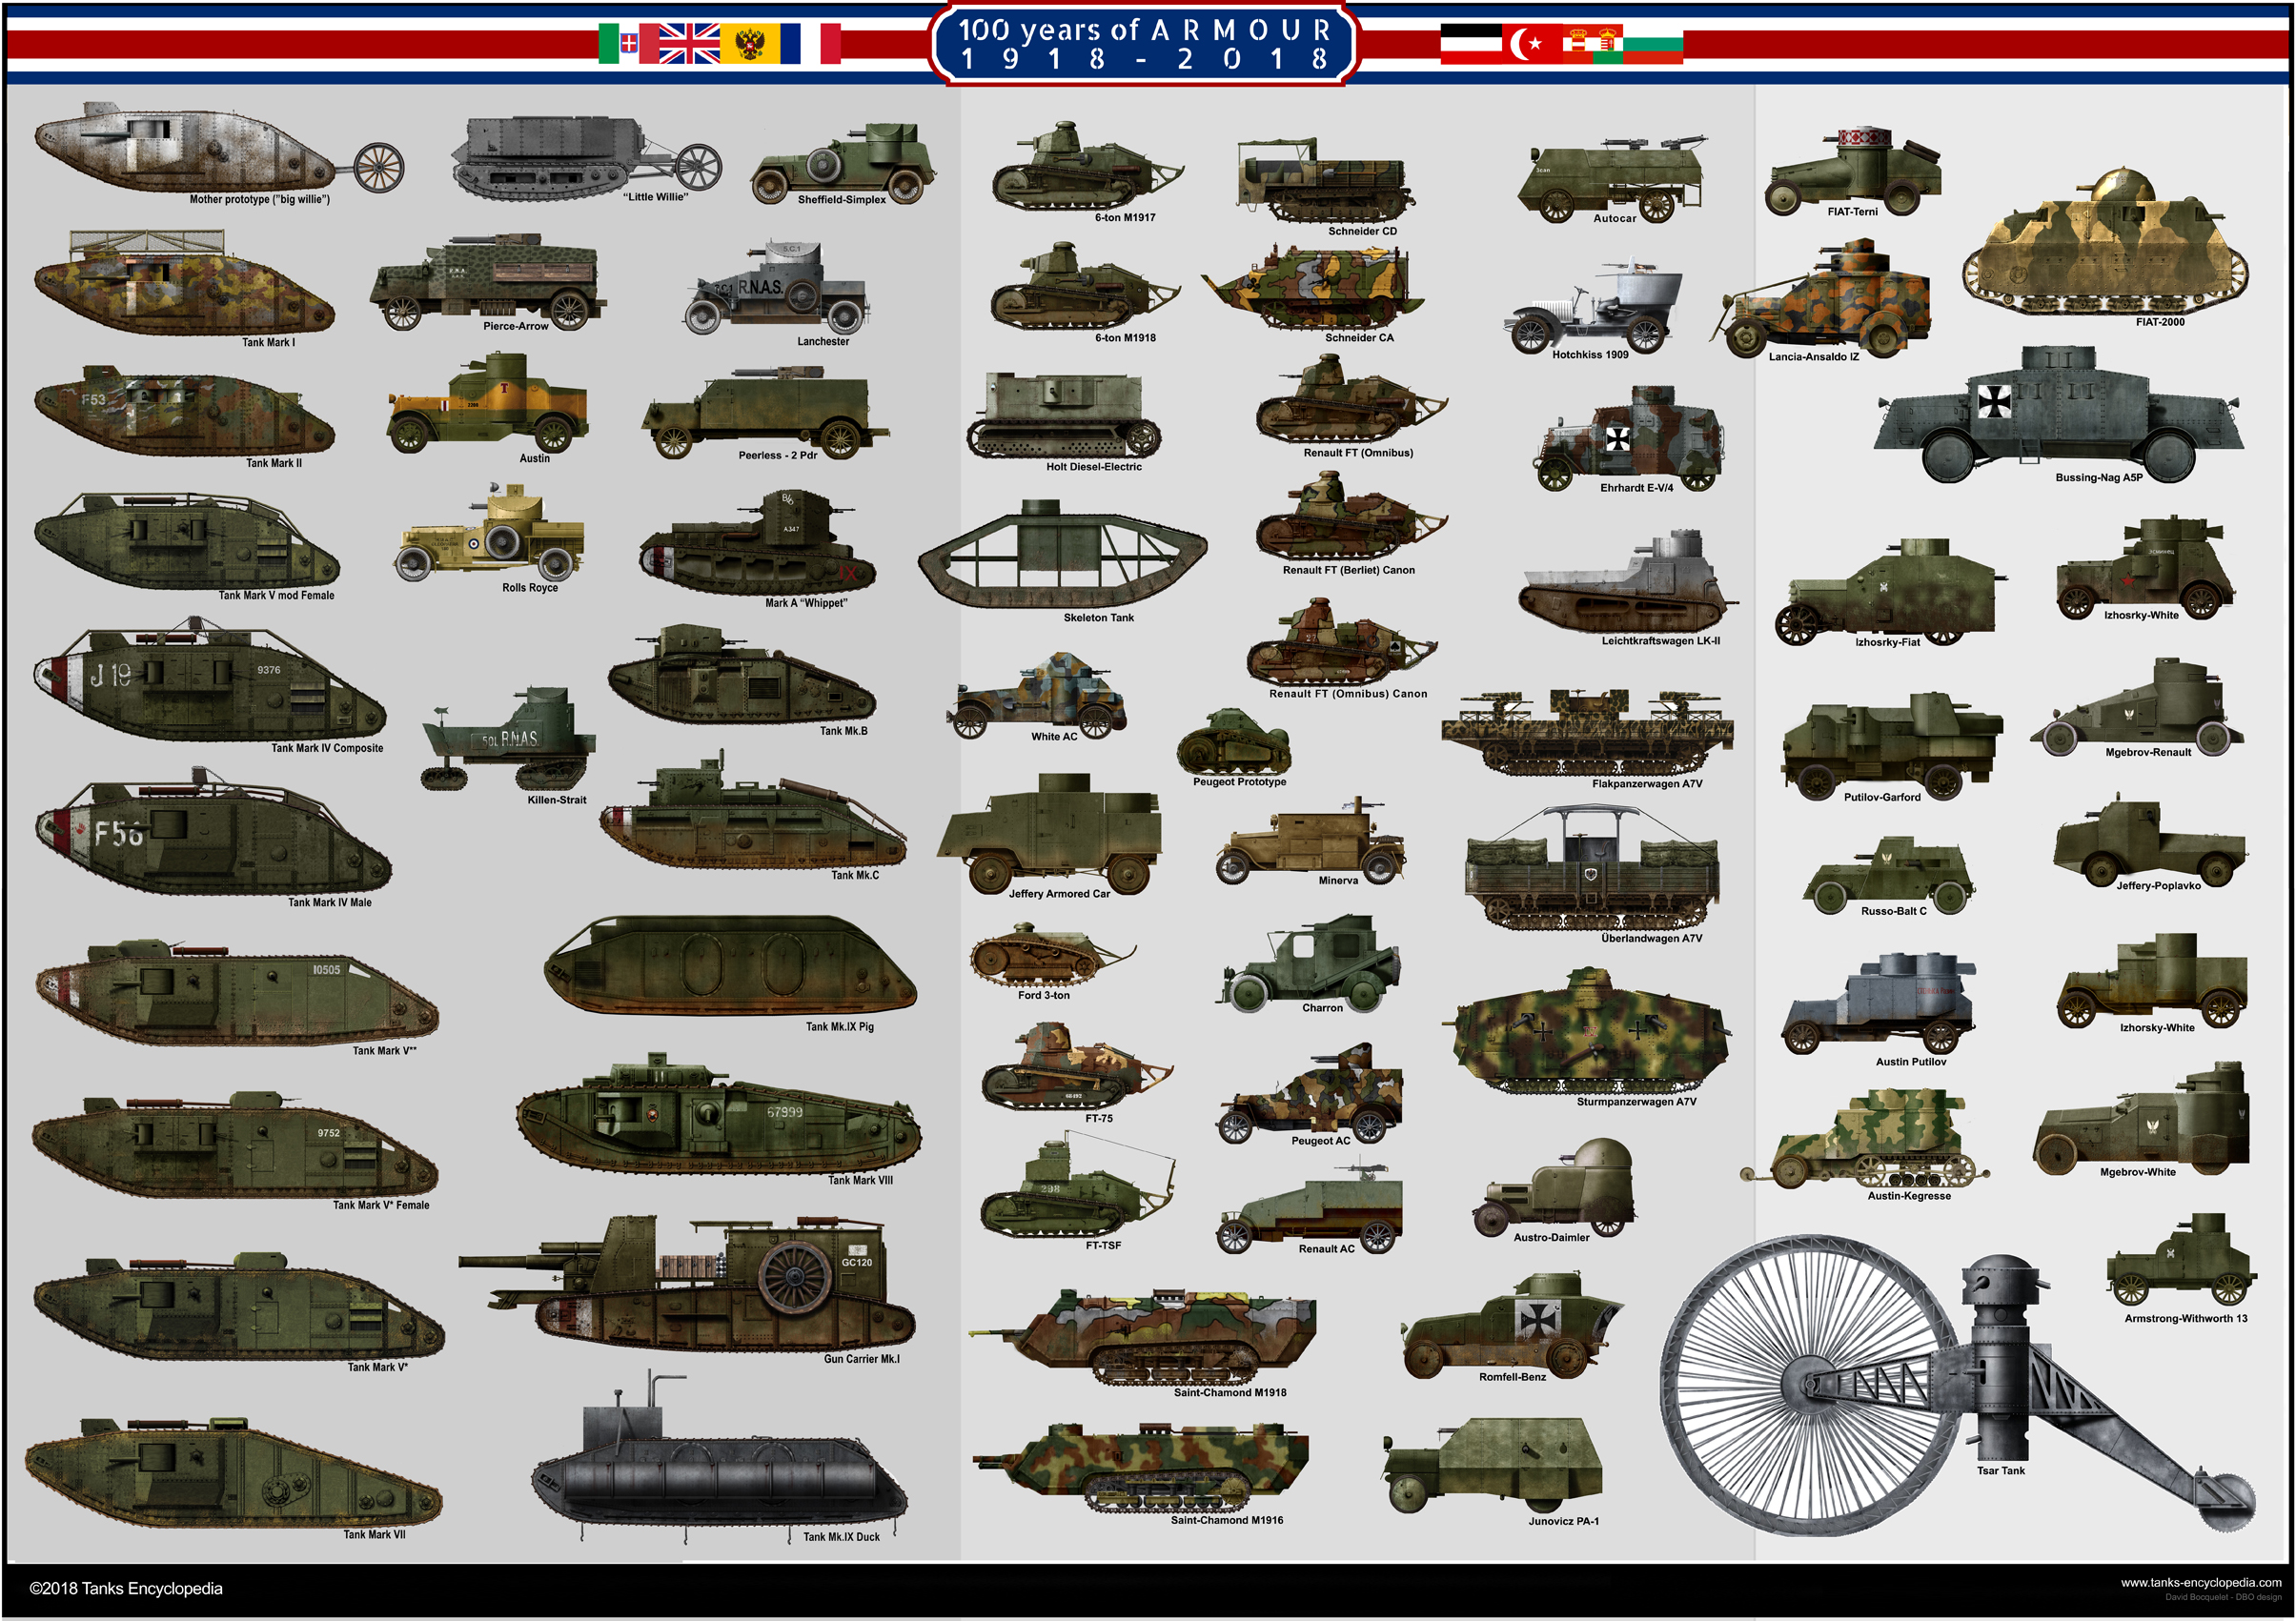 все танки второй мировой войны германия